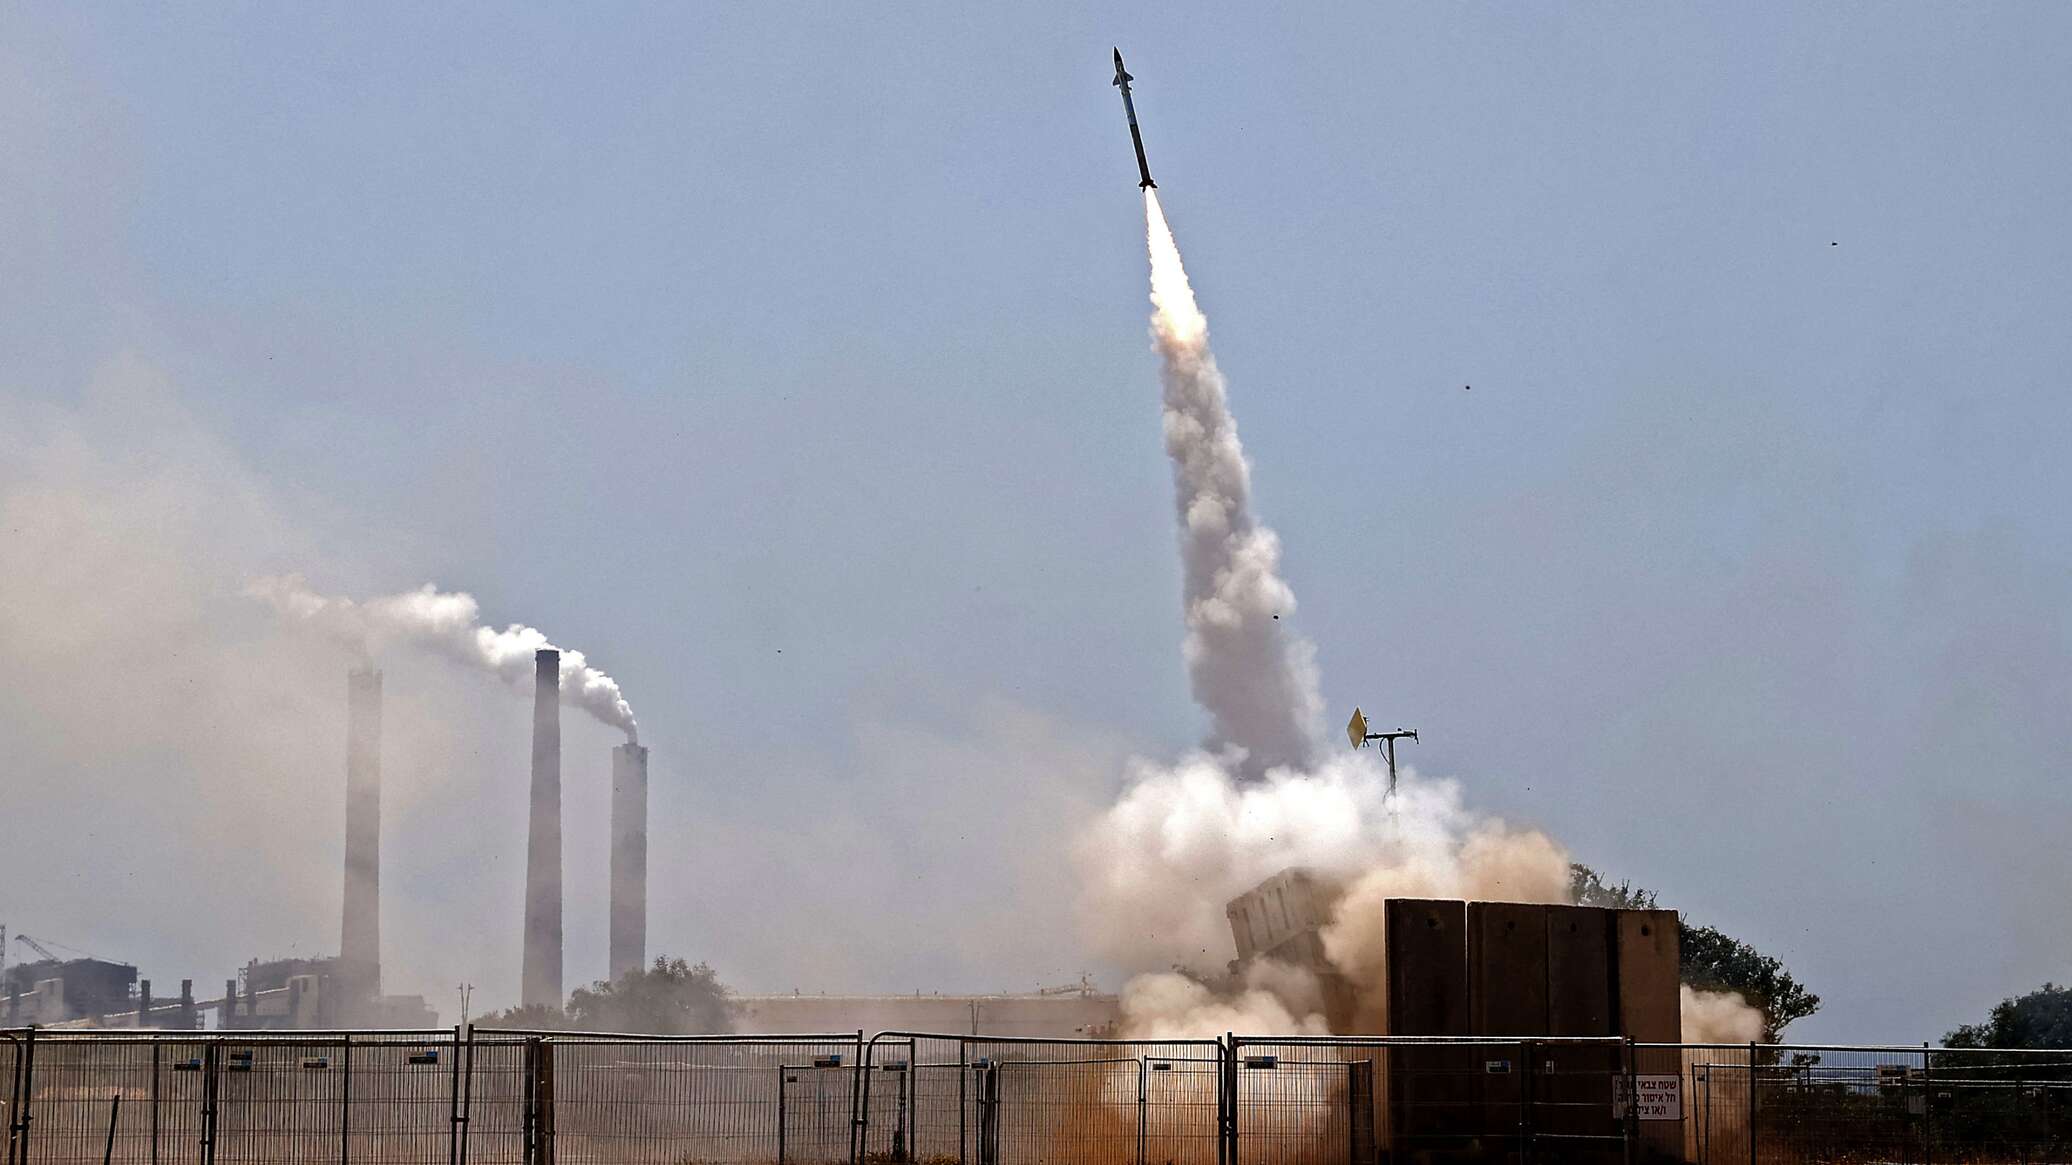 إذاعة الجيش الإسرائيلي: إطلاق 18 صاروخا من لبنان باتجاه إسرائيل تم اعتراض 8 منها